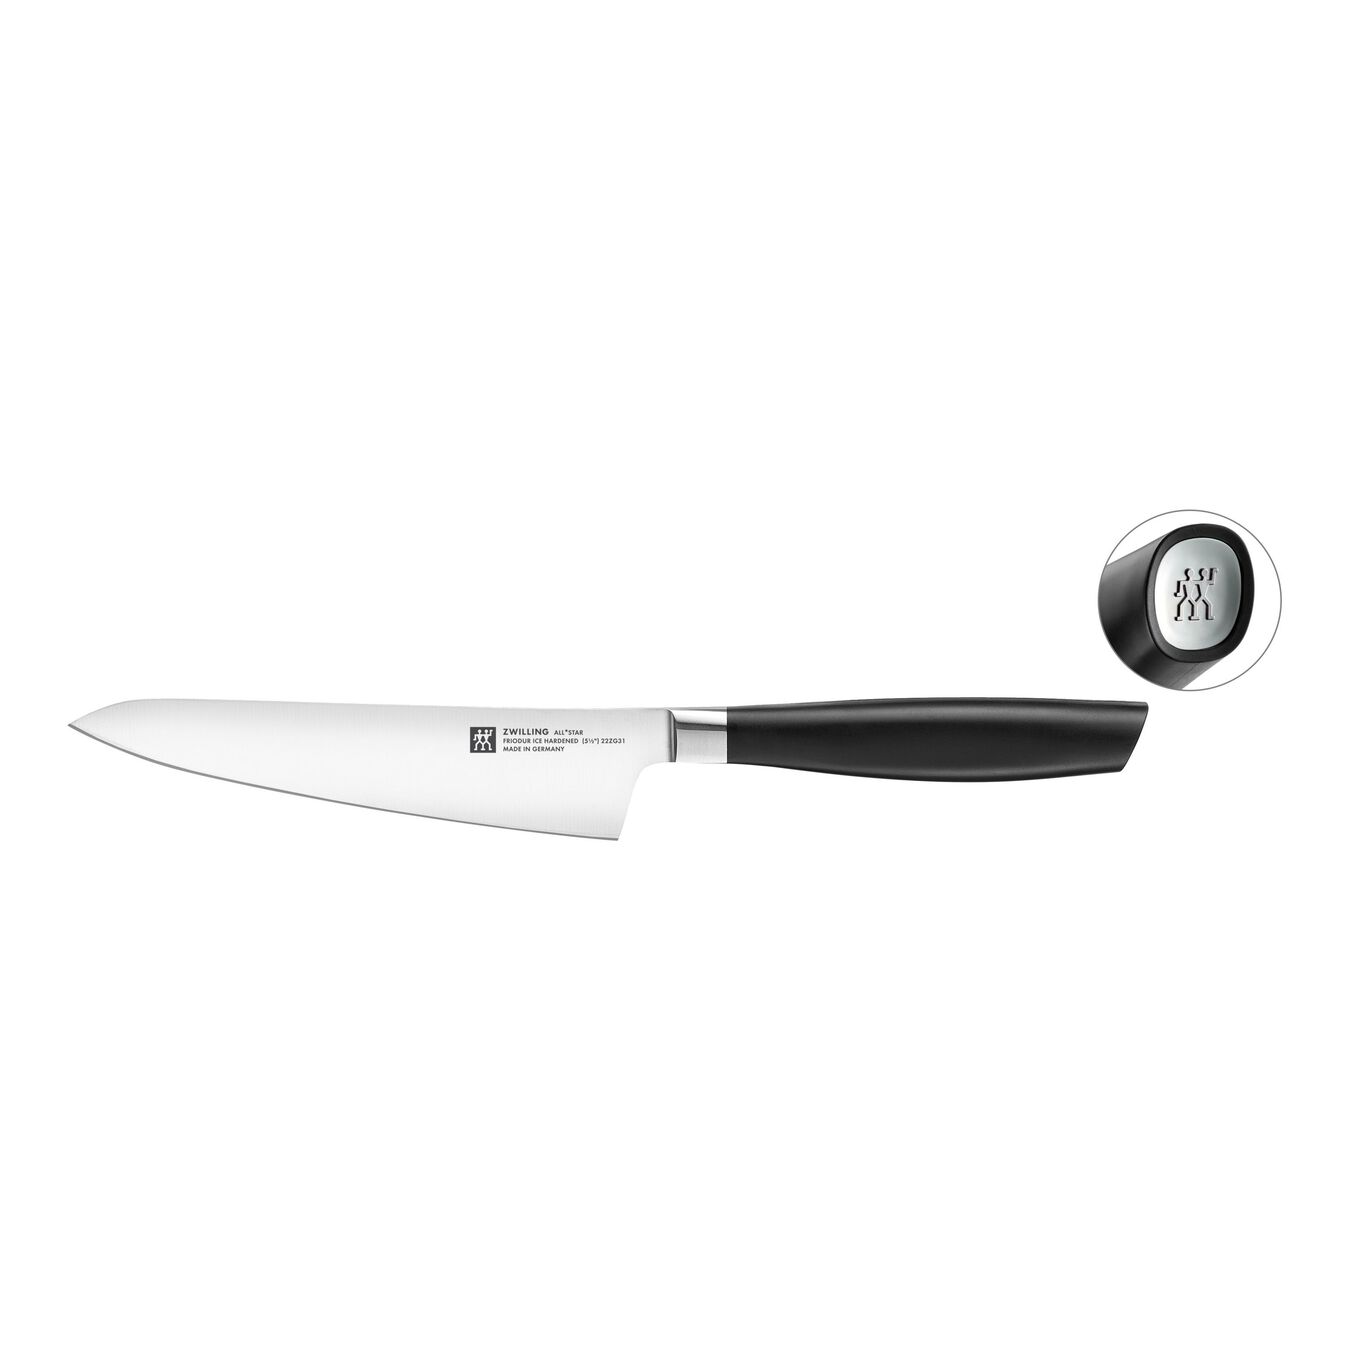 Kompakt kokkekniv 14 cm, Sølv,,large 1